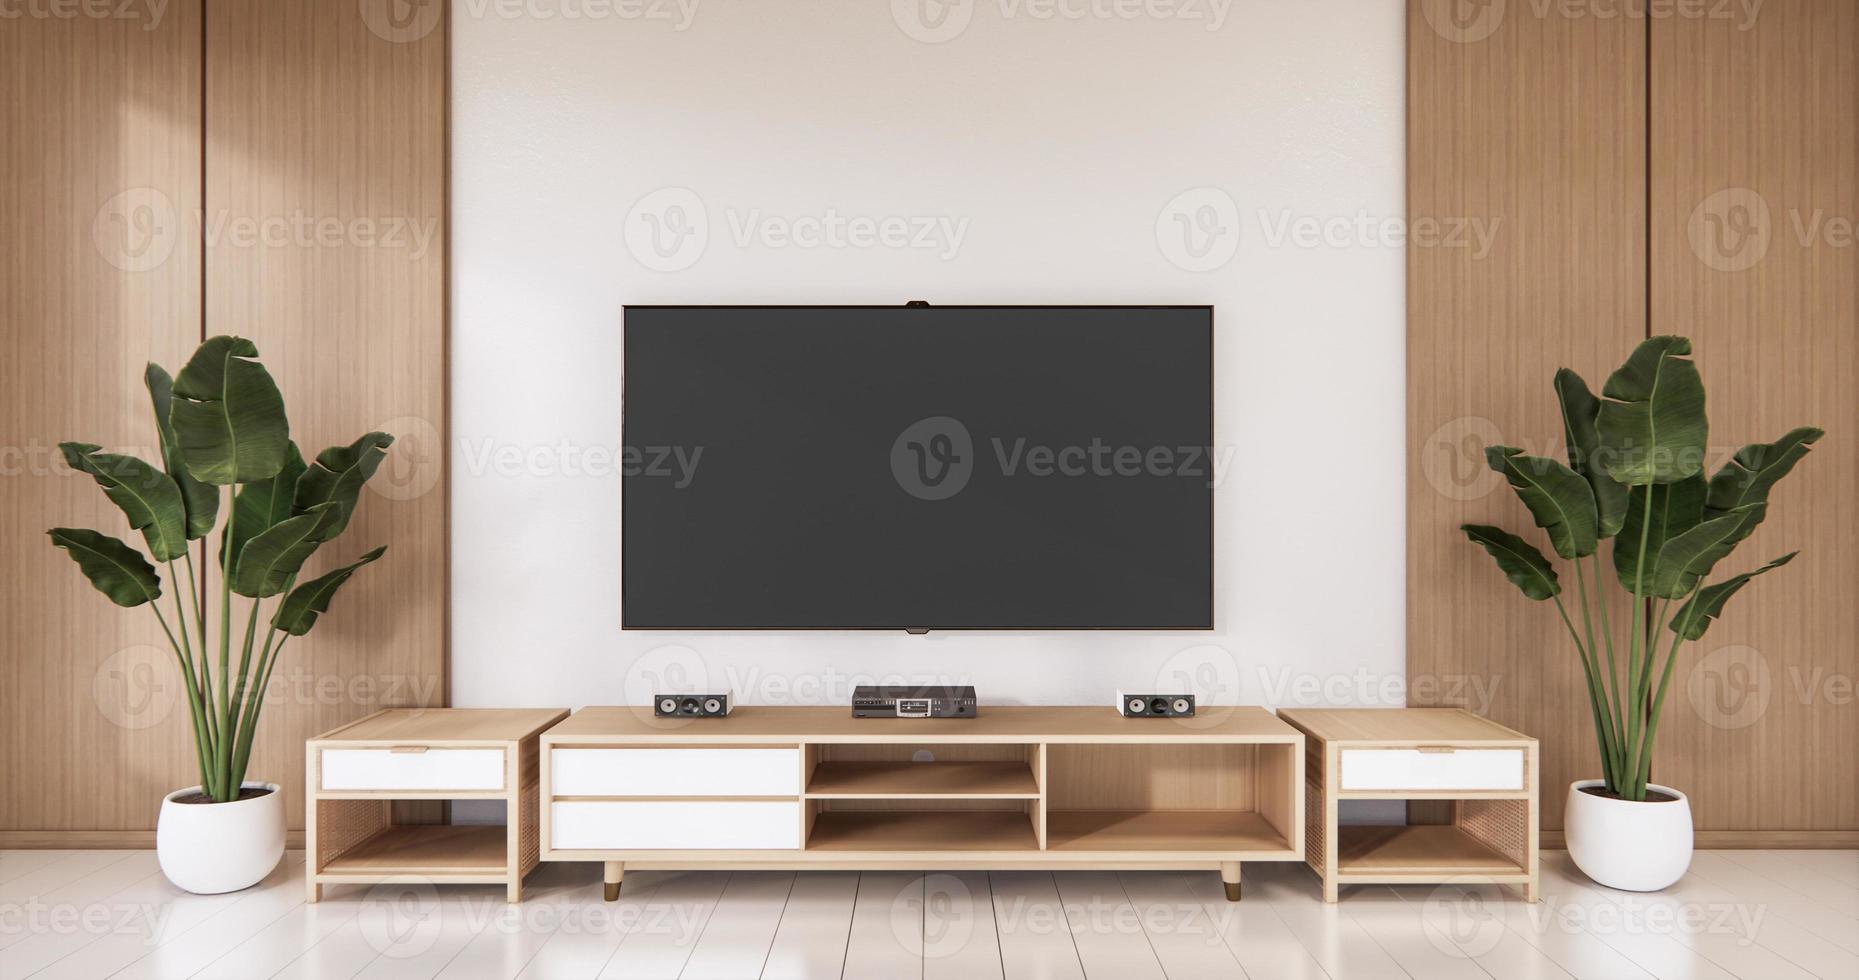 TV på tom vägg bakgrund och vägg trä japansk design på vardagsrum zen style.3d rendering foto